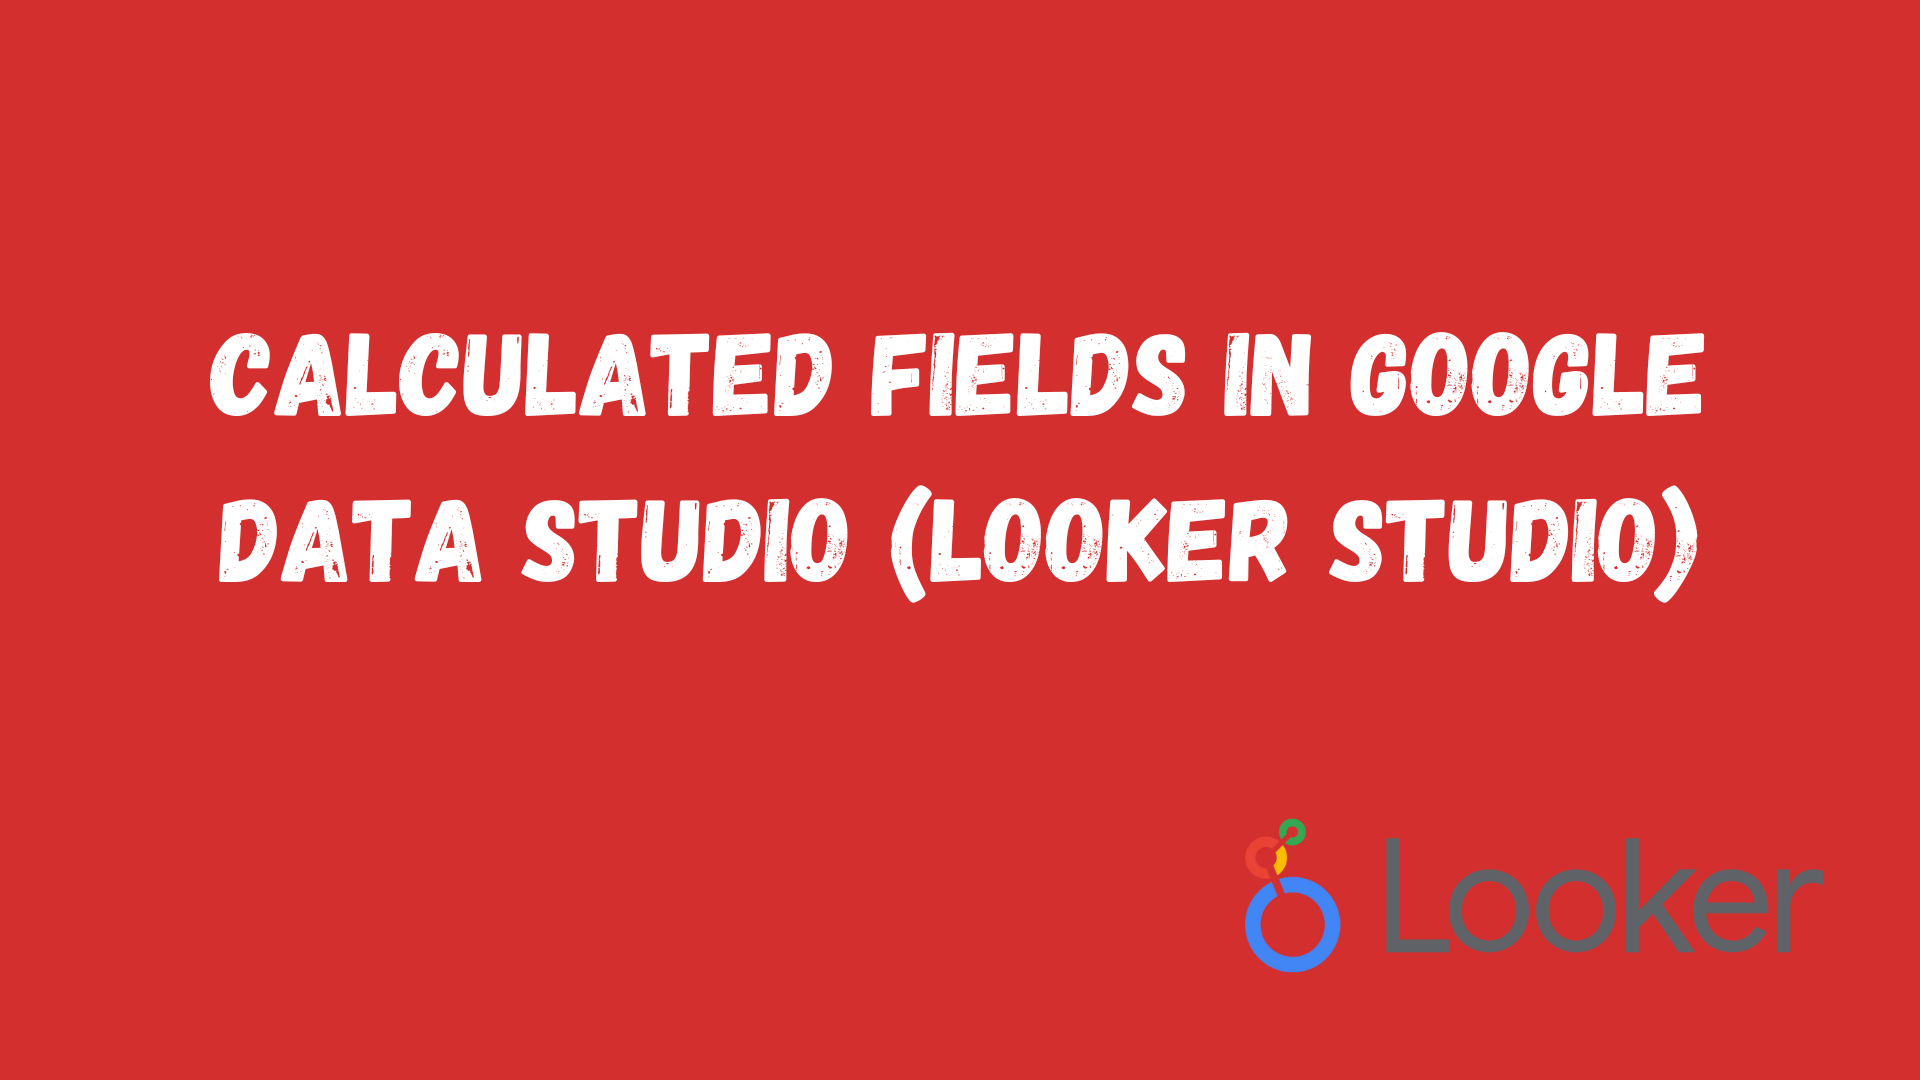 Calculated fields in Google Data Studio (Looker Studio)